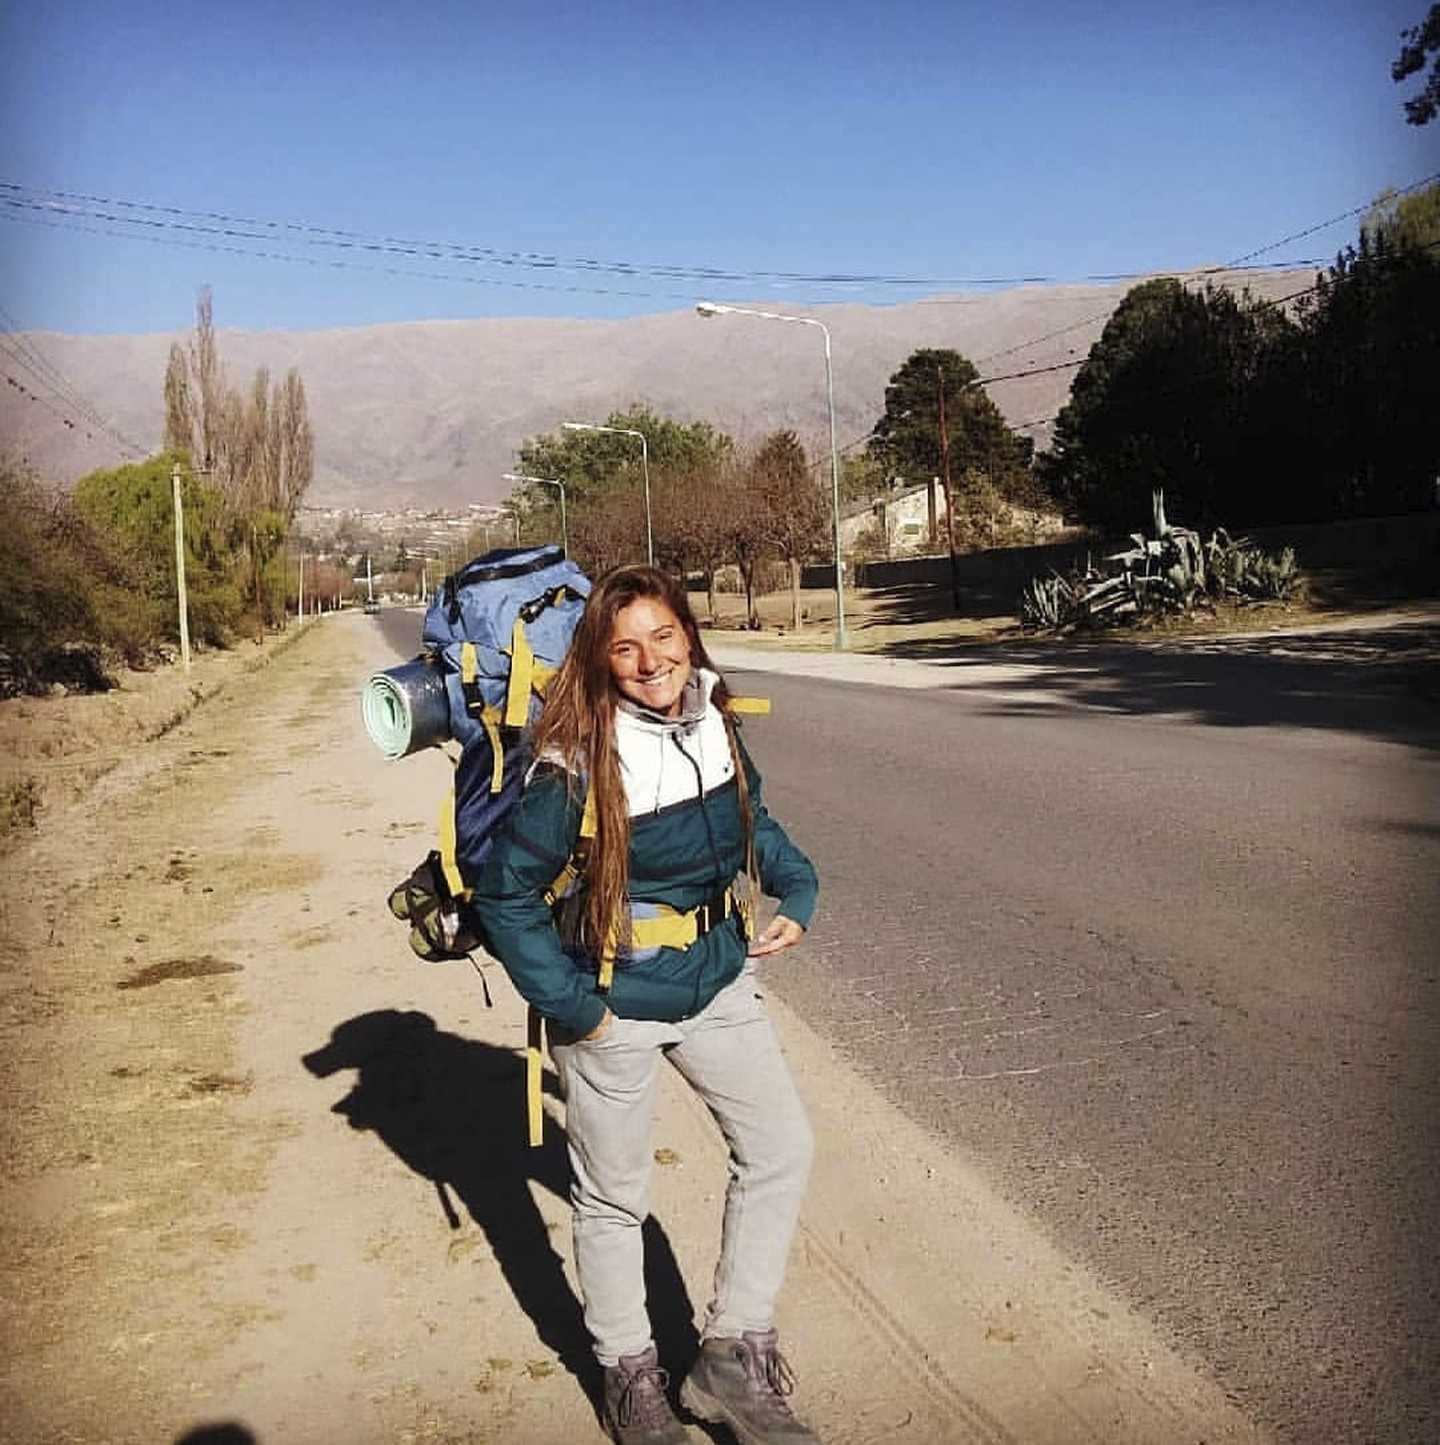 El comienzo de la aventura. En el 2017 empezó a viajar Ailin.. Acá en Tafí del Valle, Tucumán. "Mi cara con ojos achinados por el sol muestra la felicidad que tenía en ese momento". En septiembre del 2020 arrancó el viaje por la Patagonia. 